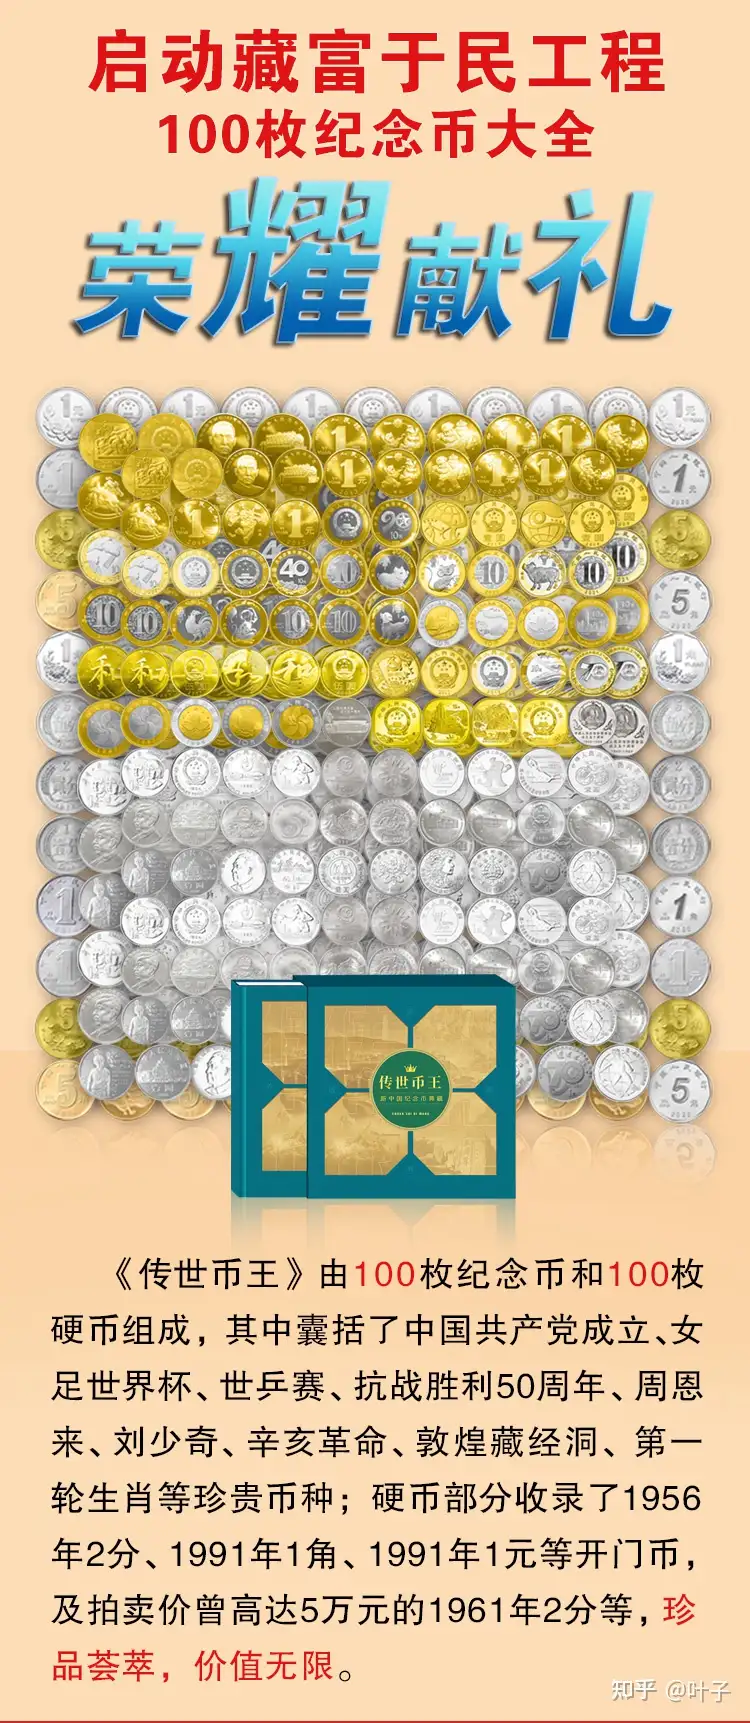 传世币王—100枚新中国纪念币全集》 - 知乎